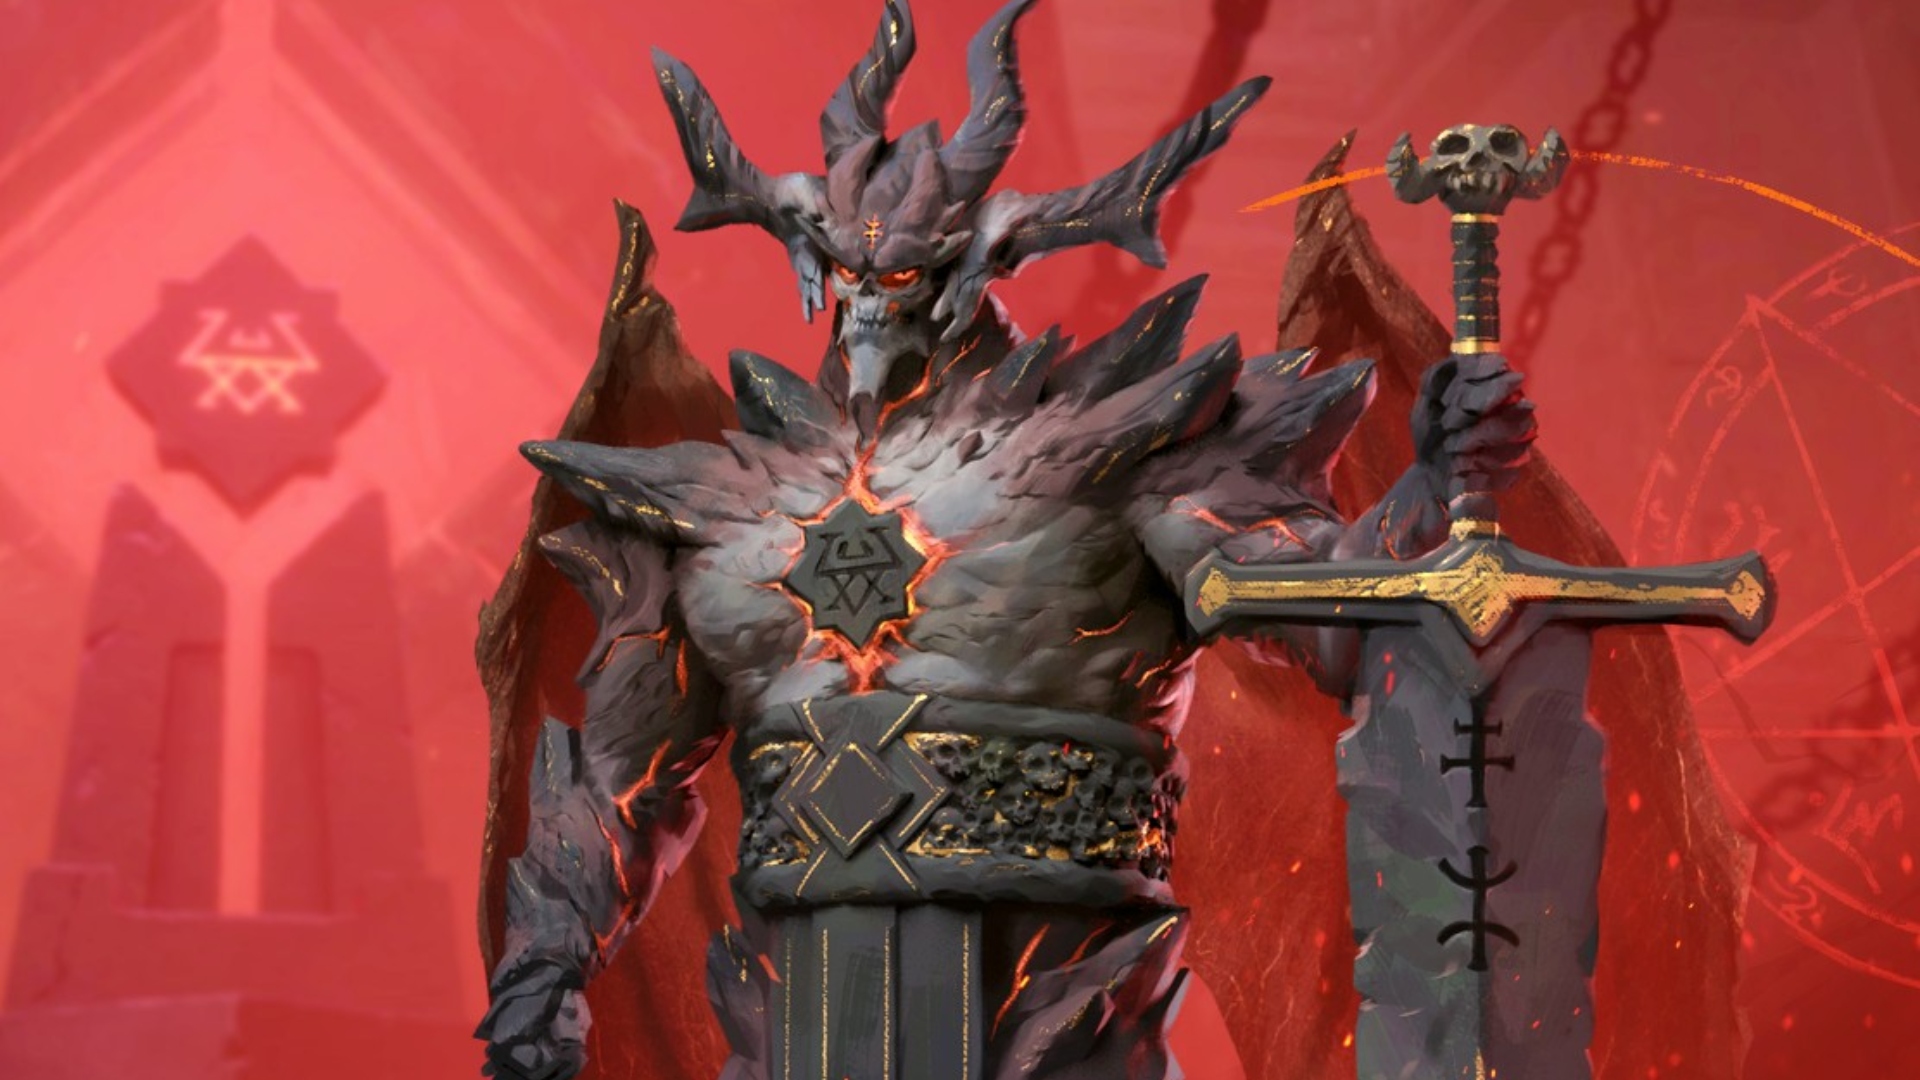 Solium Infernum Astaroth: Un enorme monstruo infernal hecho de roca, Astaroth del juego de estrategia Solium Infernum.